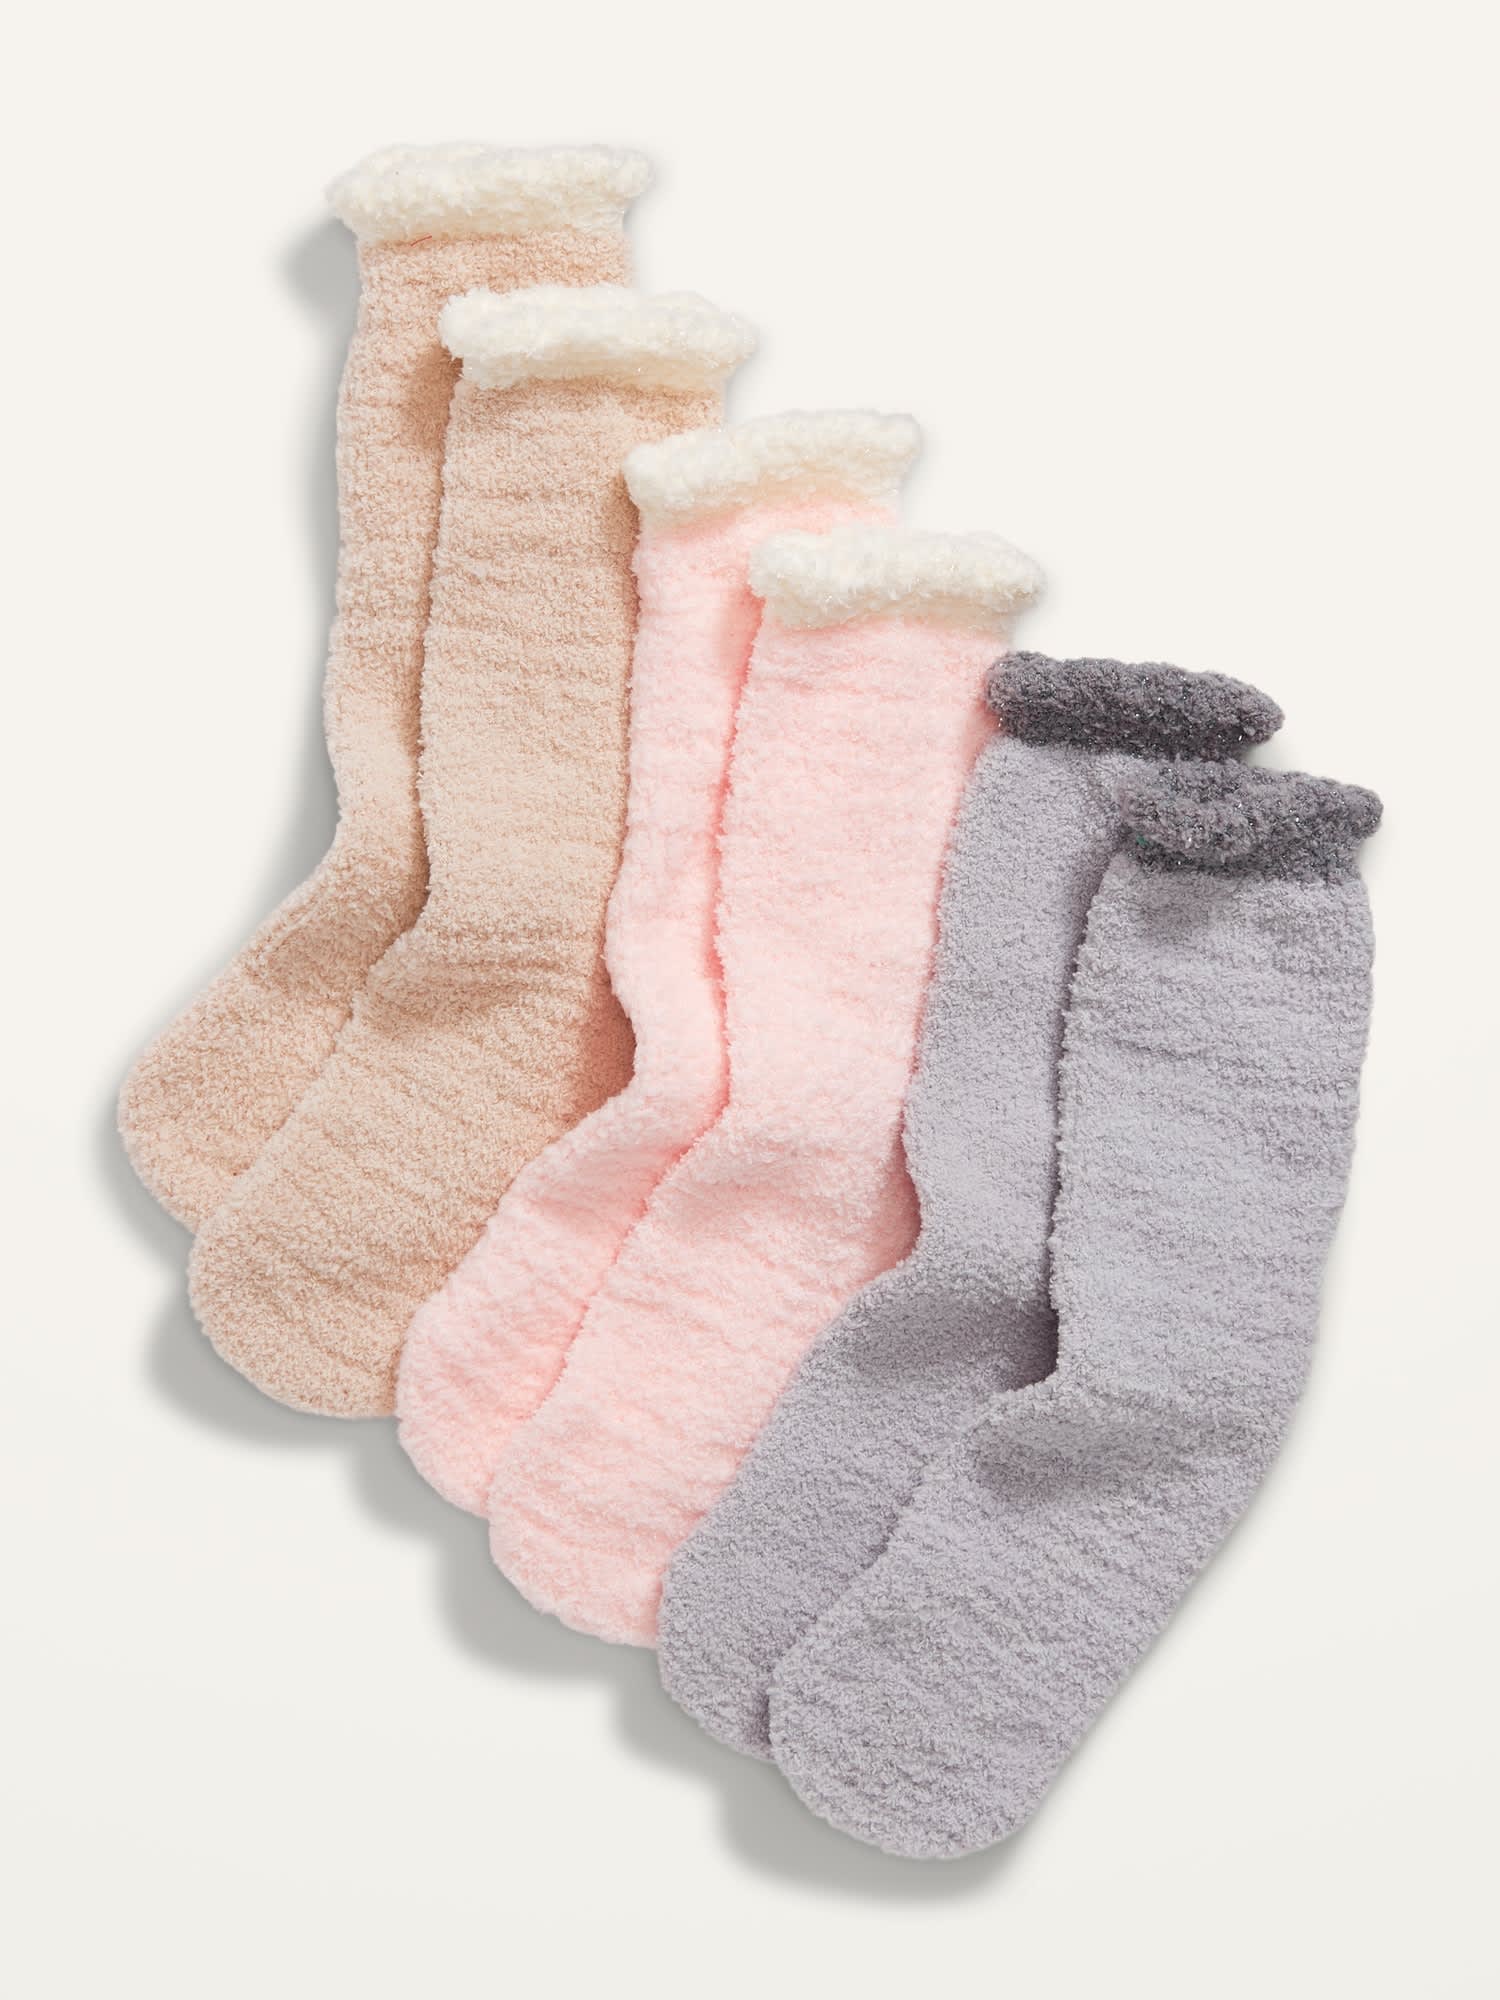 Boofle Fluffly Slipper Socks Bed Socks Men Women Gift Warm Cosy 